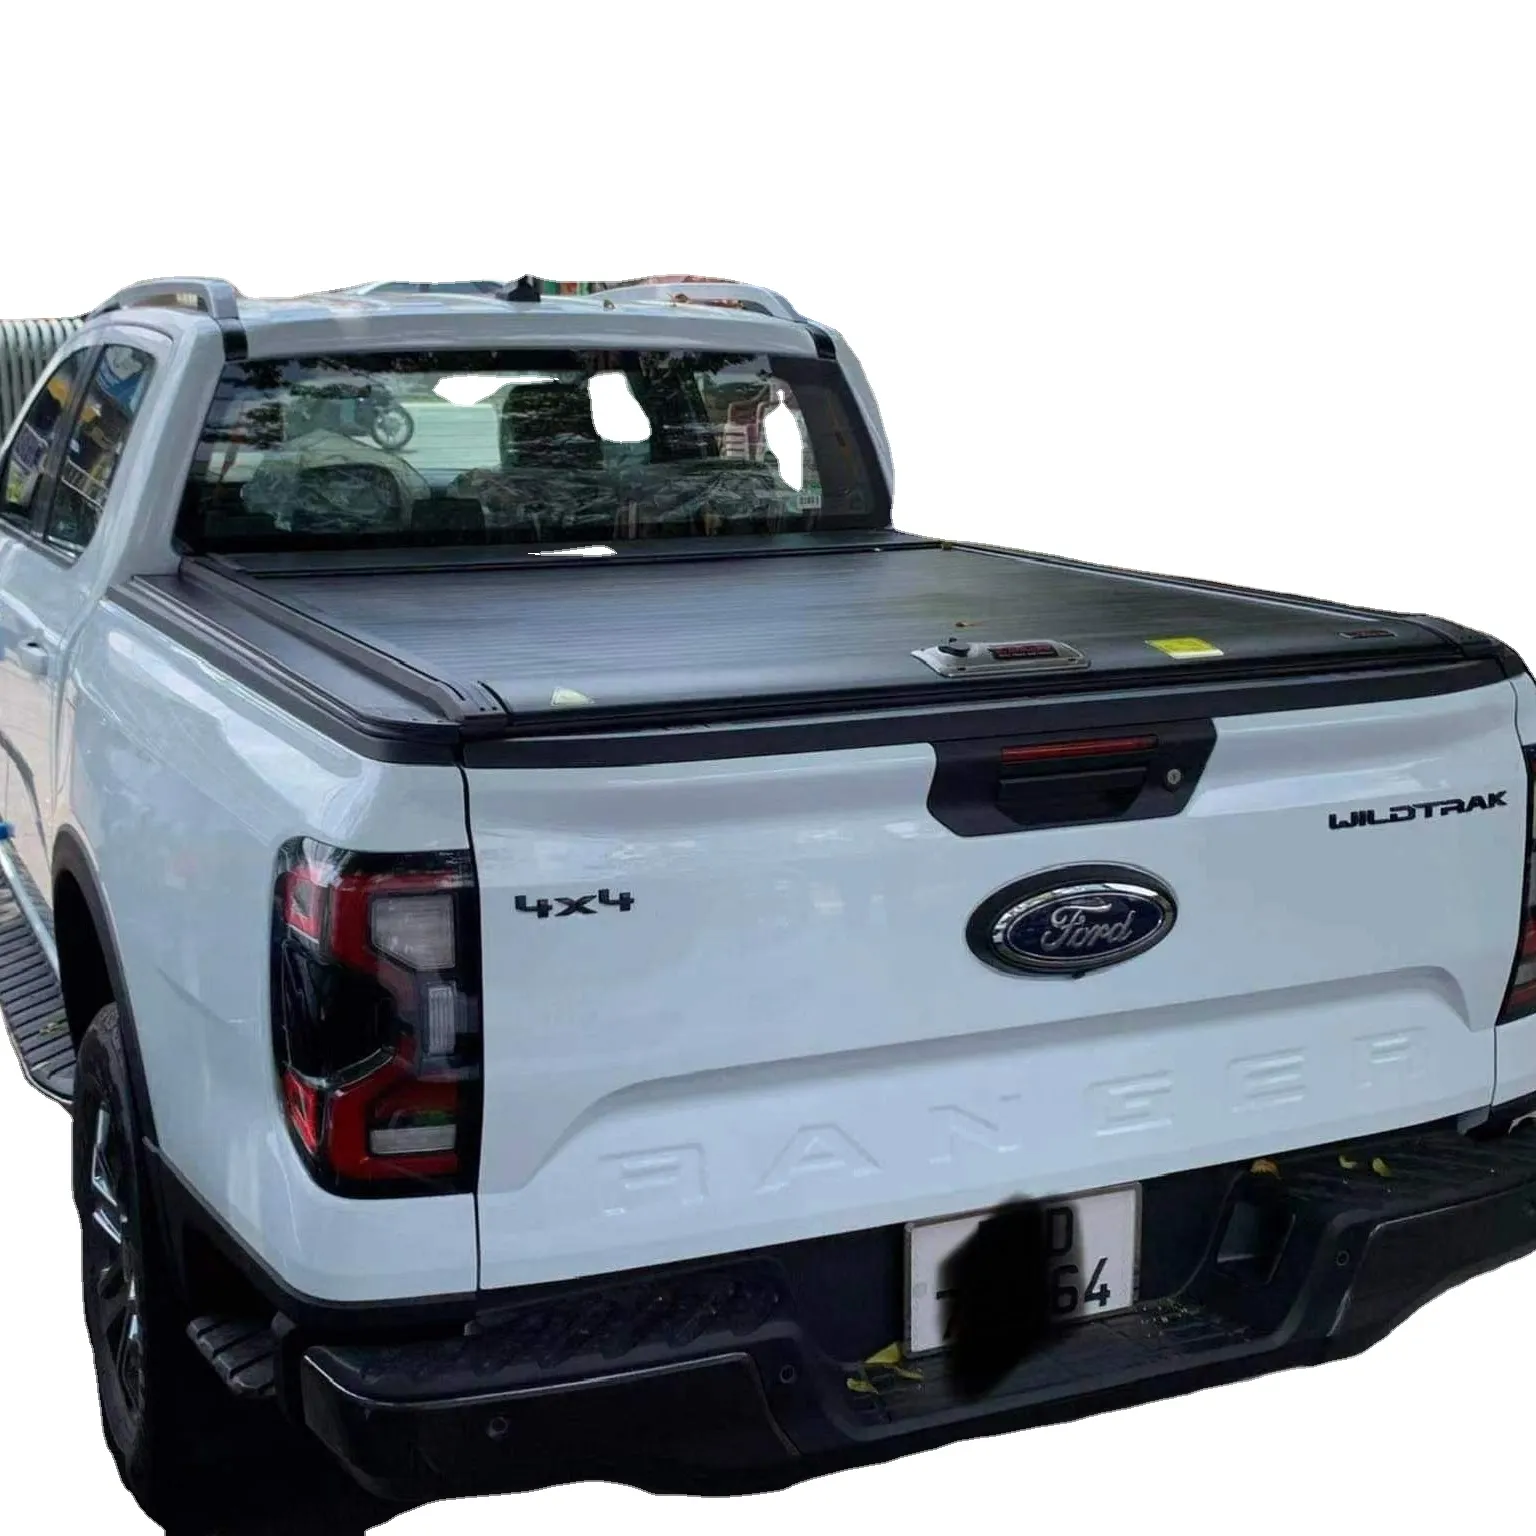 Usine Pickup fullbox camion pick-up lourd lit de chargement tonneau couverture rétractable volet roulant couverture ford ranger raptor f150